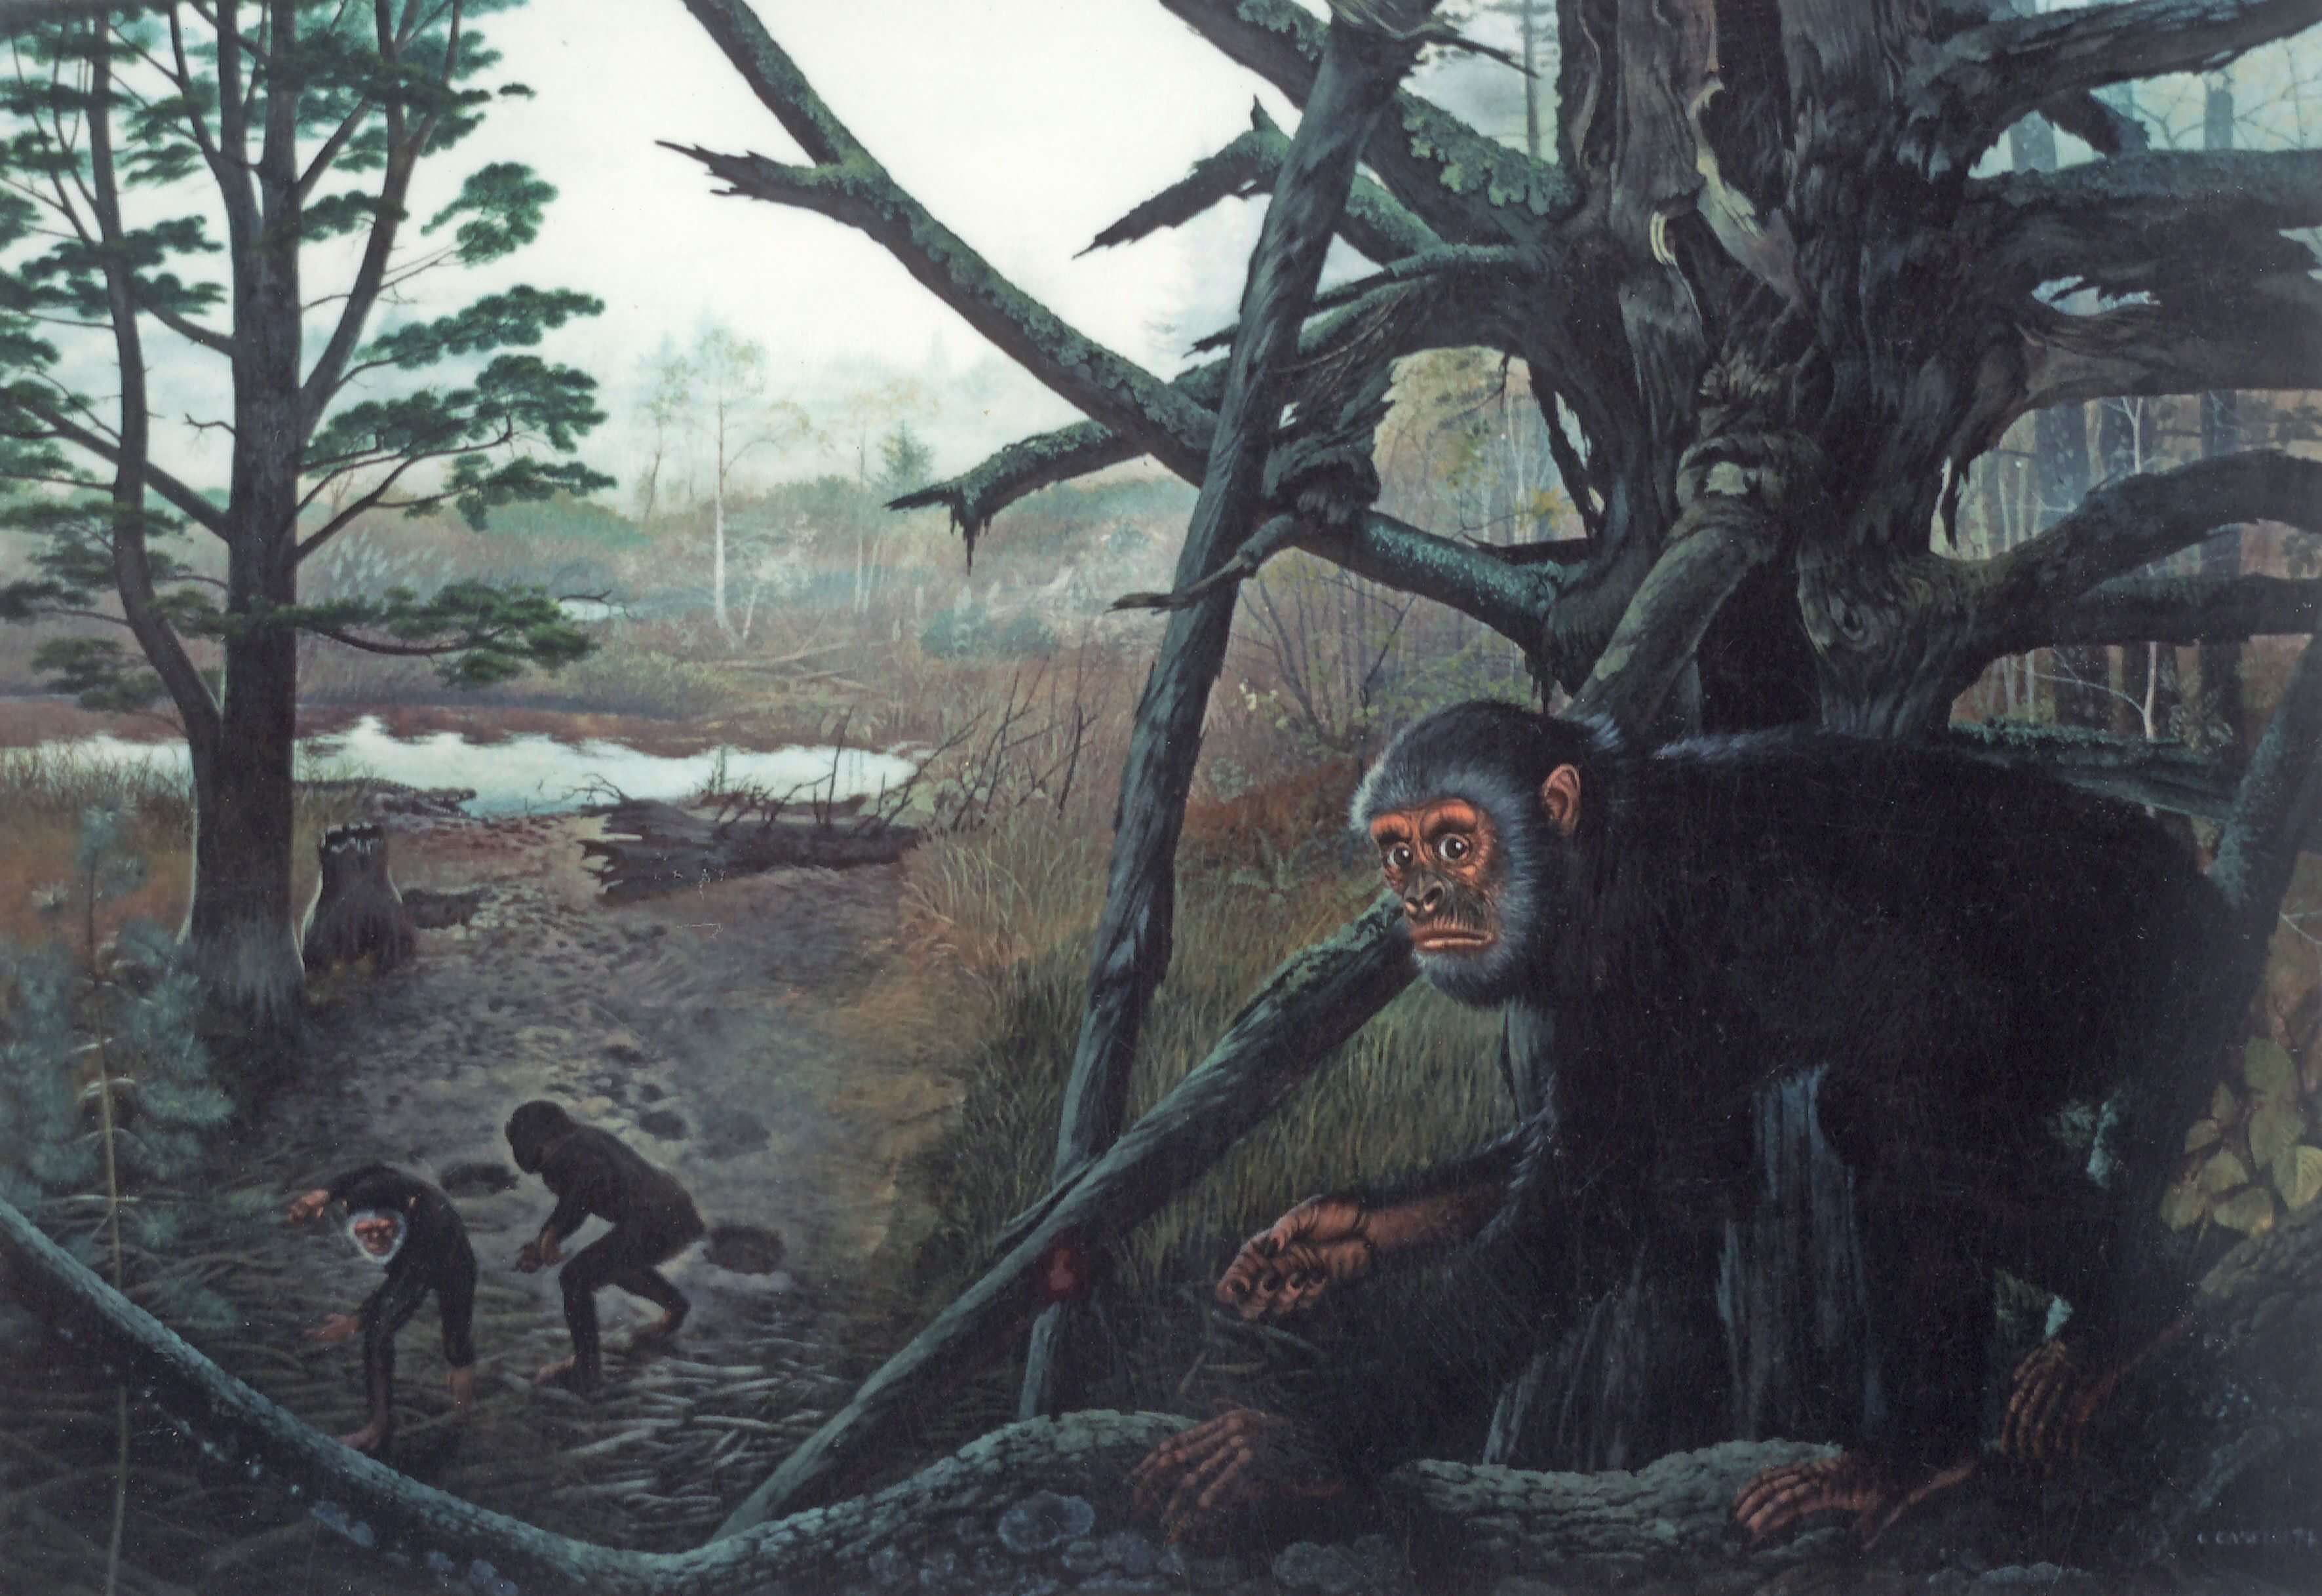 Warum die alten Affen wissen, wie man gehen auf zwei Beinen und nicht auf den Bäumen lebten?